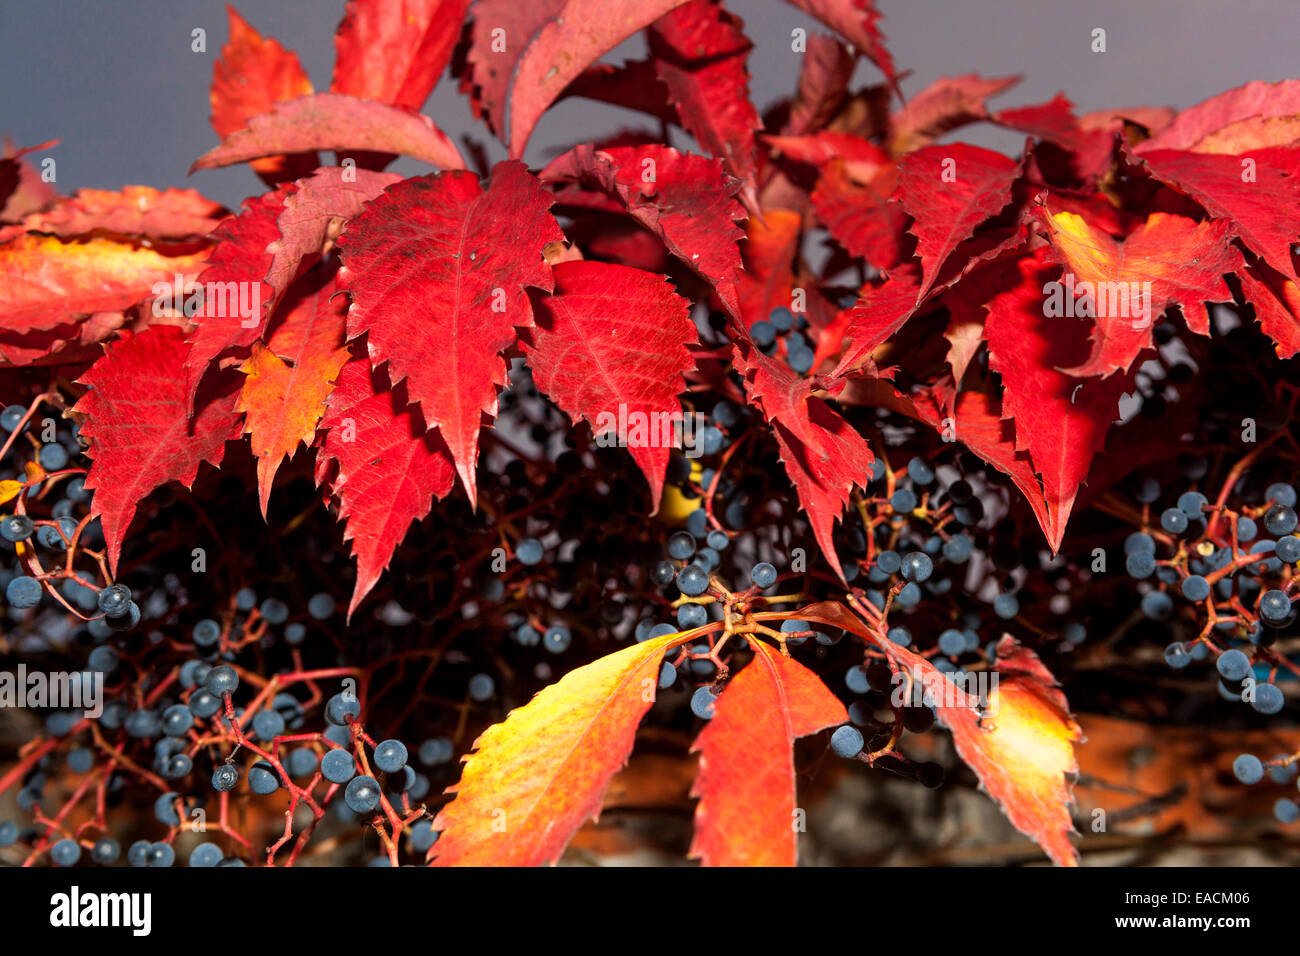 Virginia creeper Parthenocissus quinquefolia, red leaves berries Stock Photo